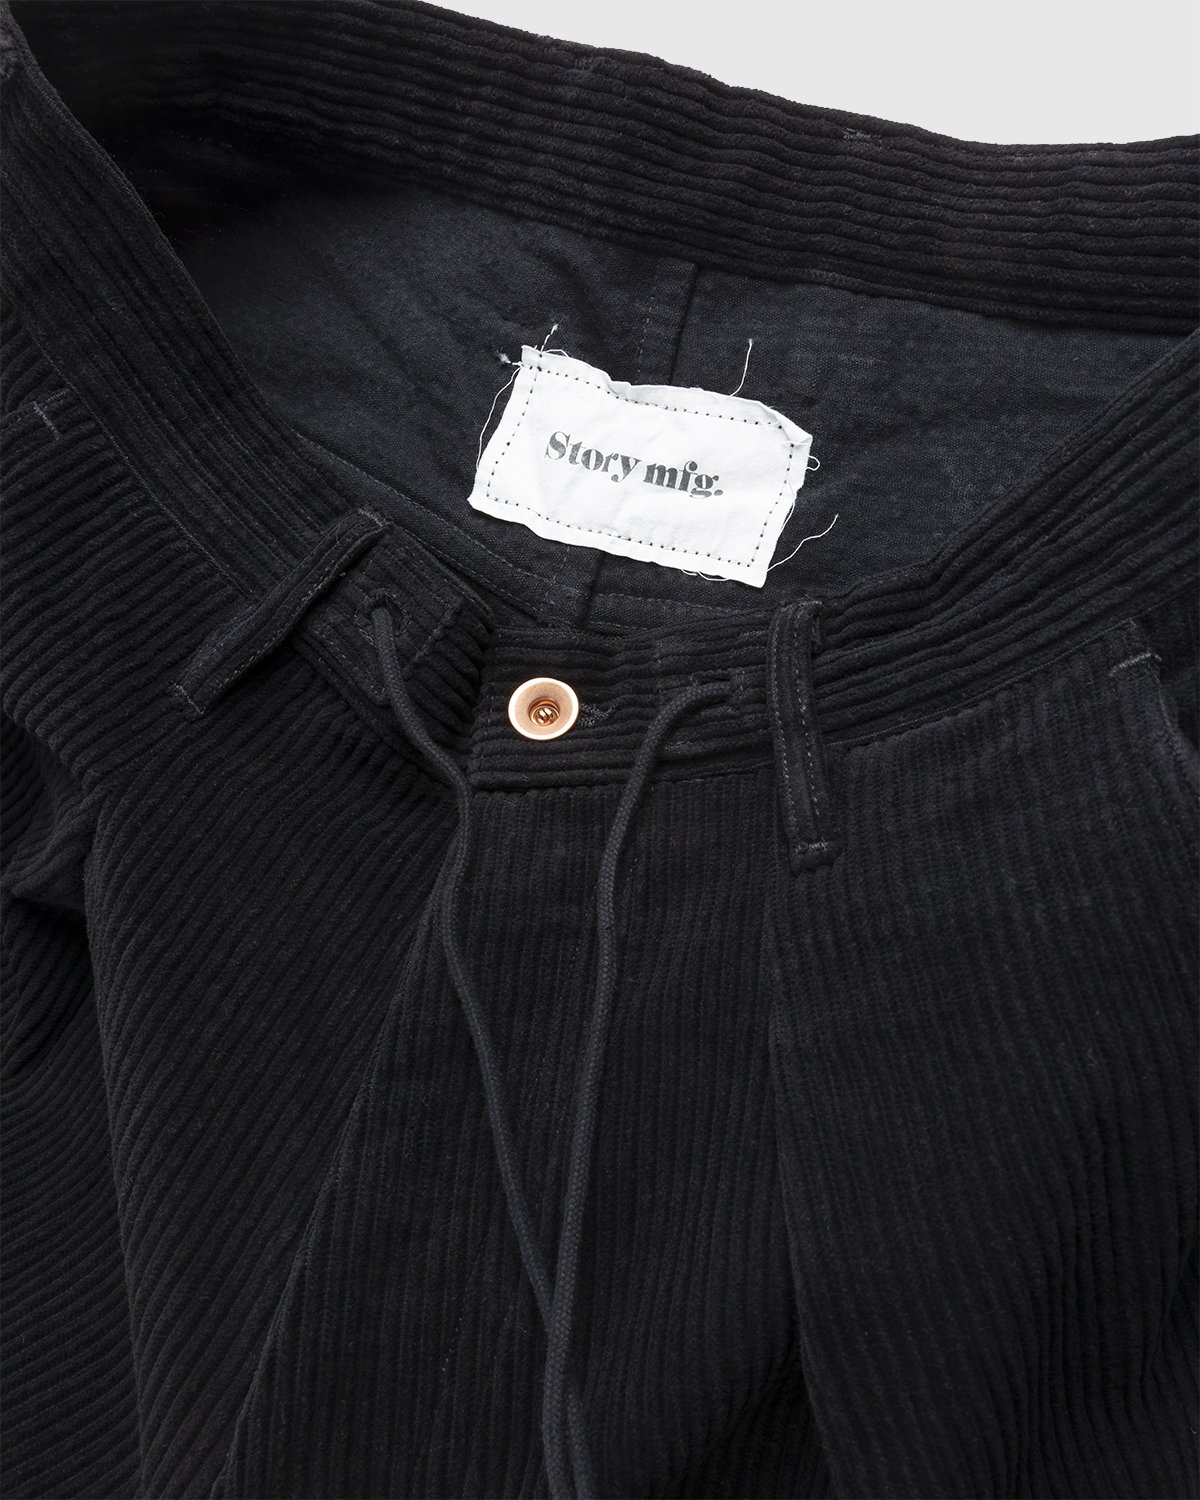 Story mfg. - Corduroy Lush Pants Iron - Clothing - Black - Image 5